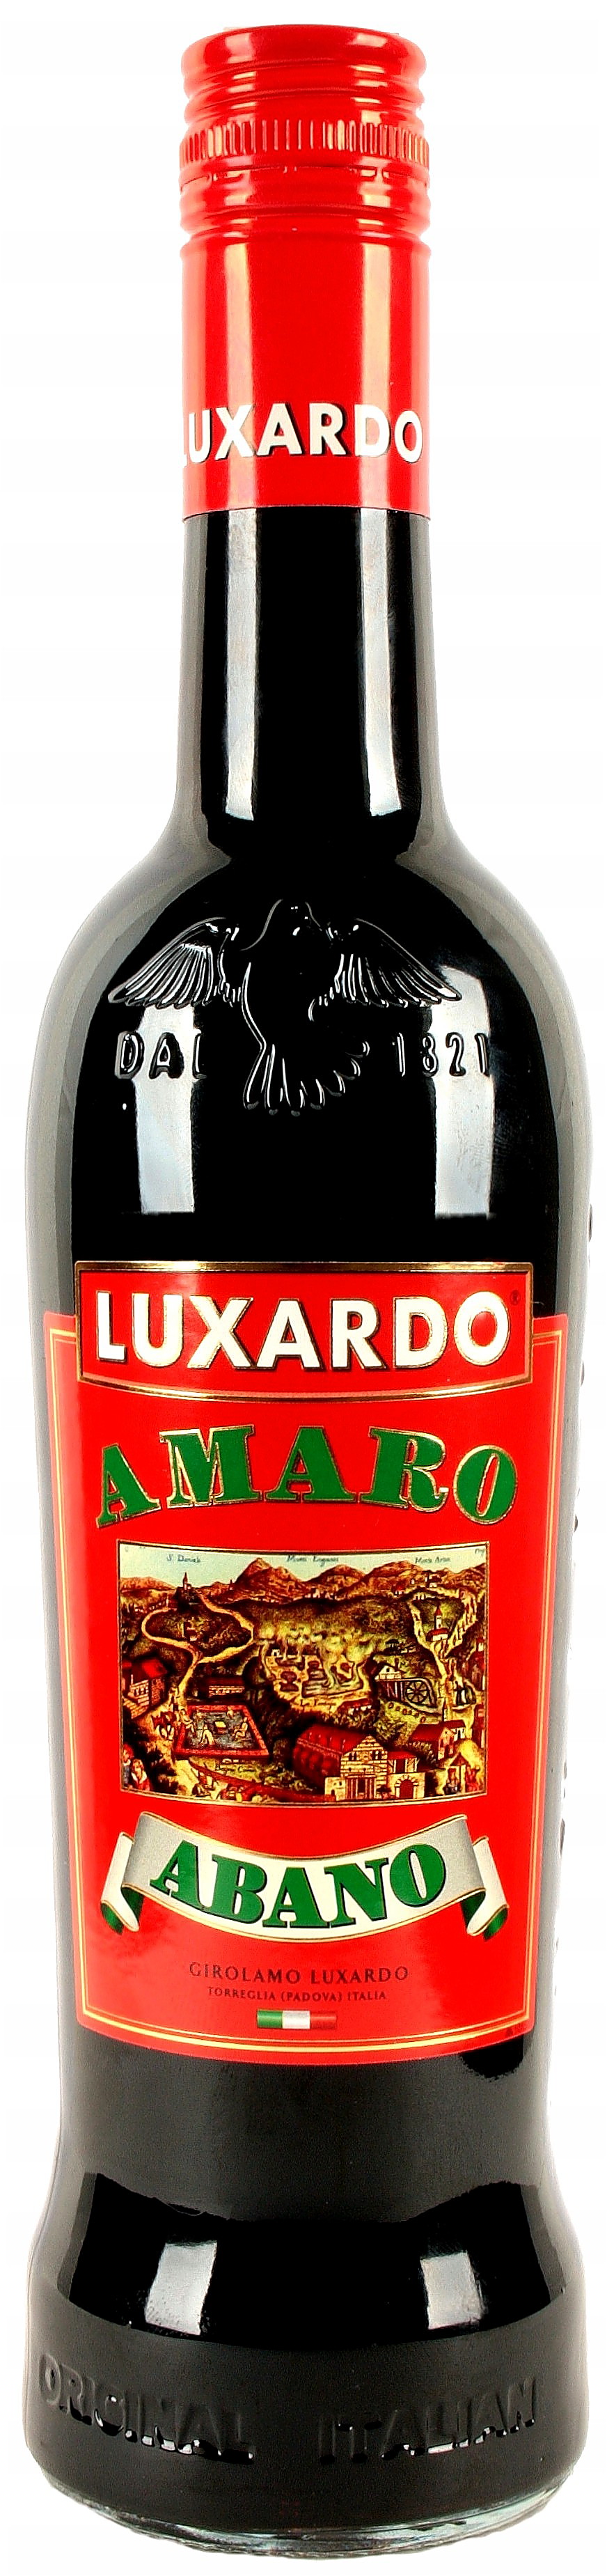 Luxardo Amaro Abano 0,7